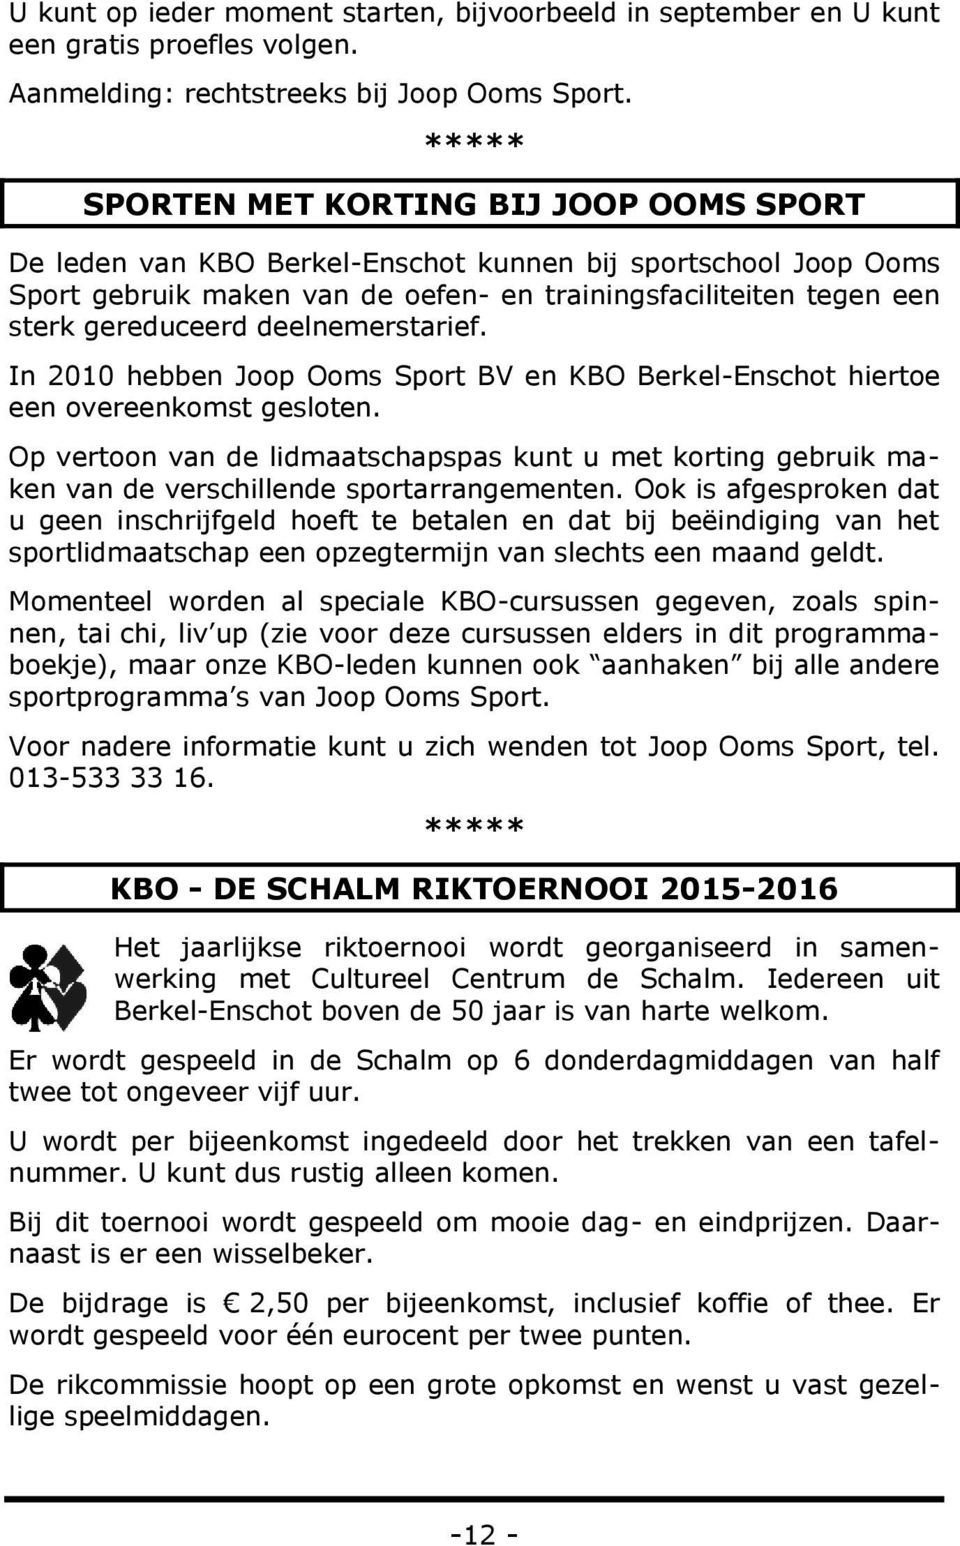 deelnemerstarief. In 2010 hebben Joop Ooms Sport BV en KBO Berkel-Enschot hiertoe een overeenkomst gesloten.